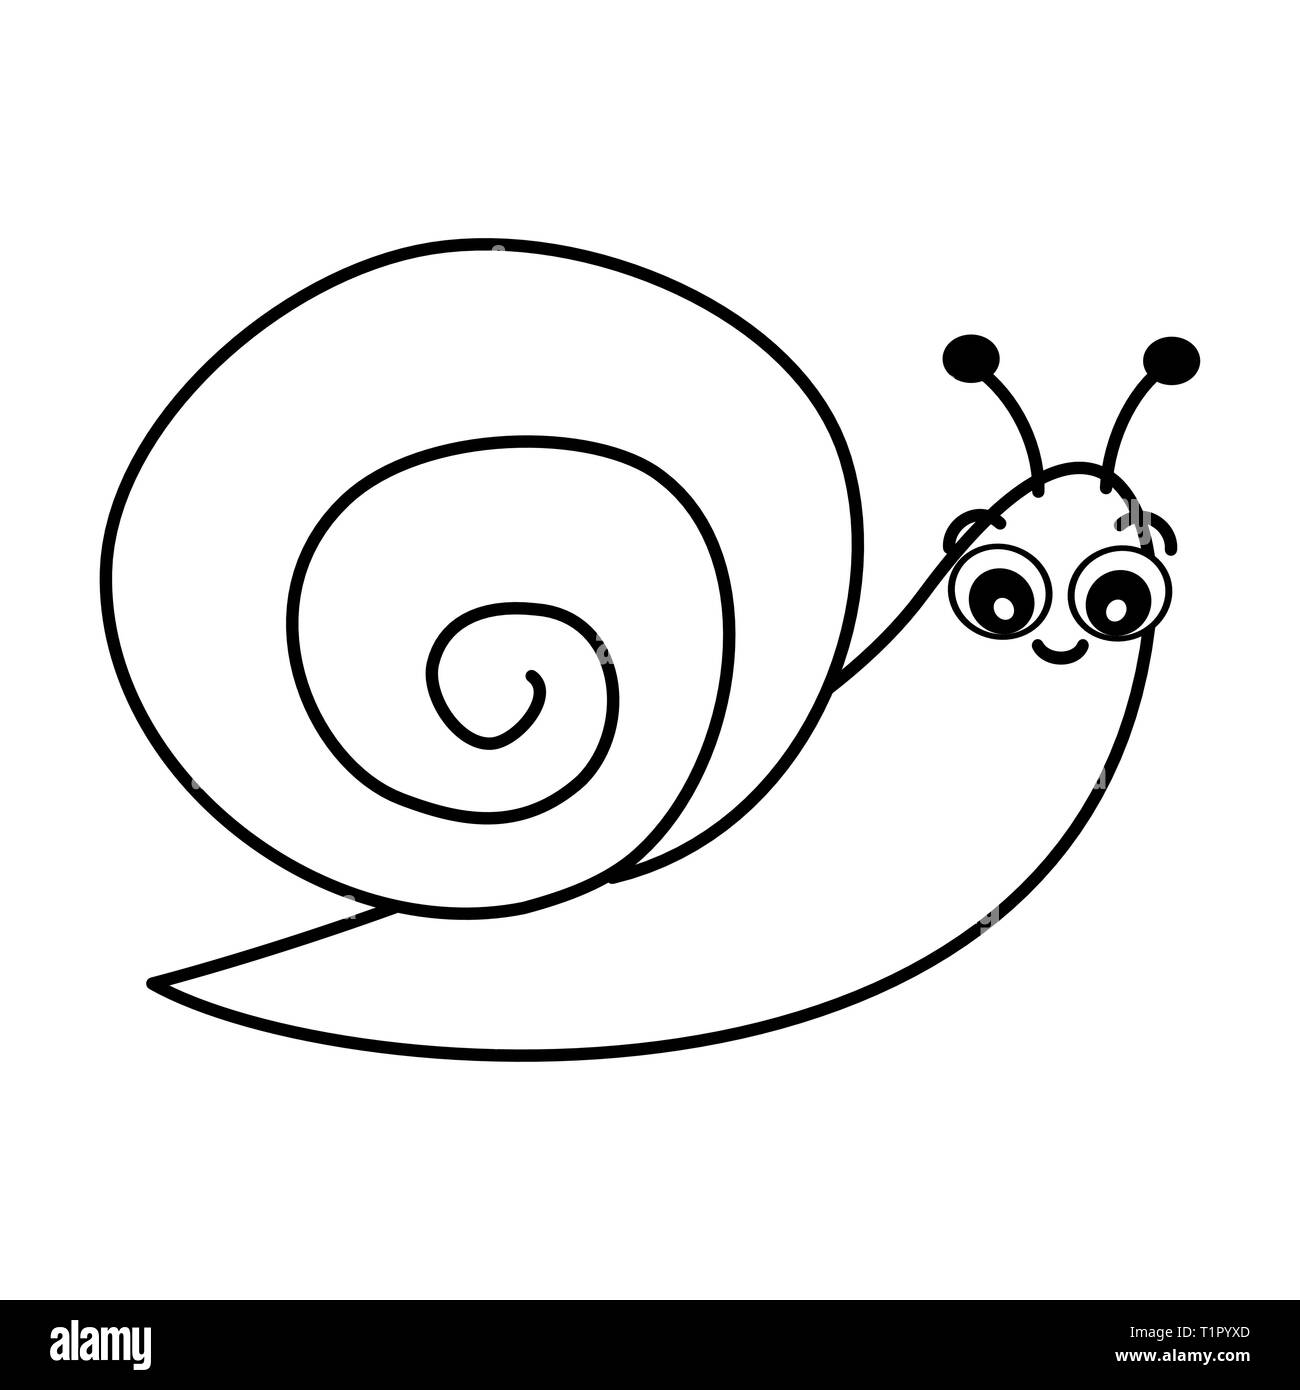 Cute cartoon noir et blanc illustration vecteur d'escargot pour l'art à colorier Illustration de Vecteur